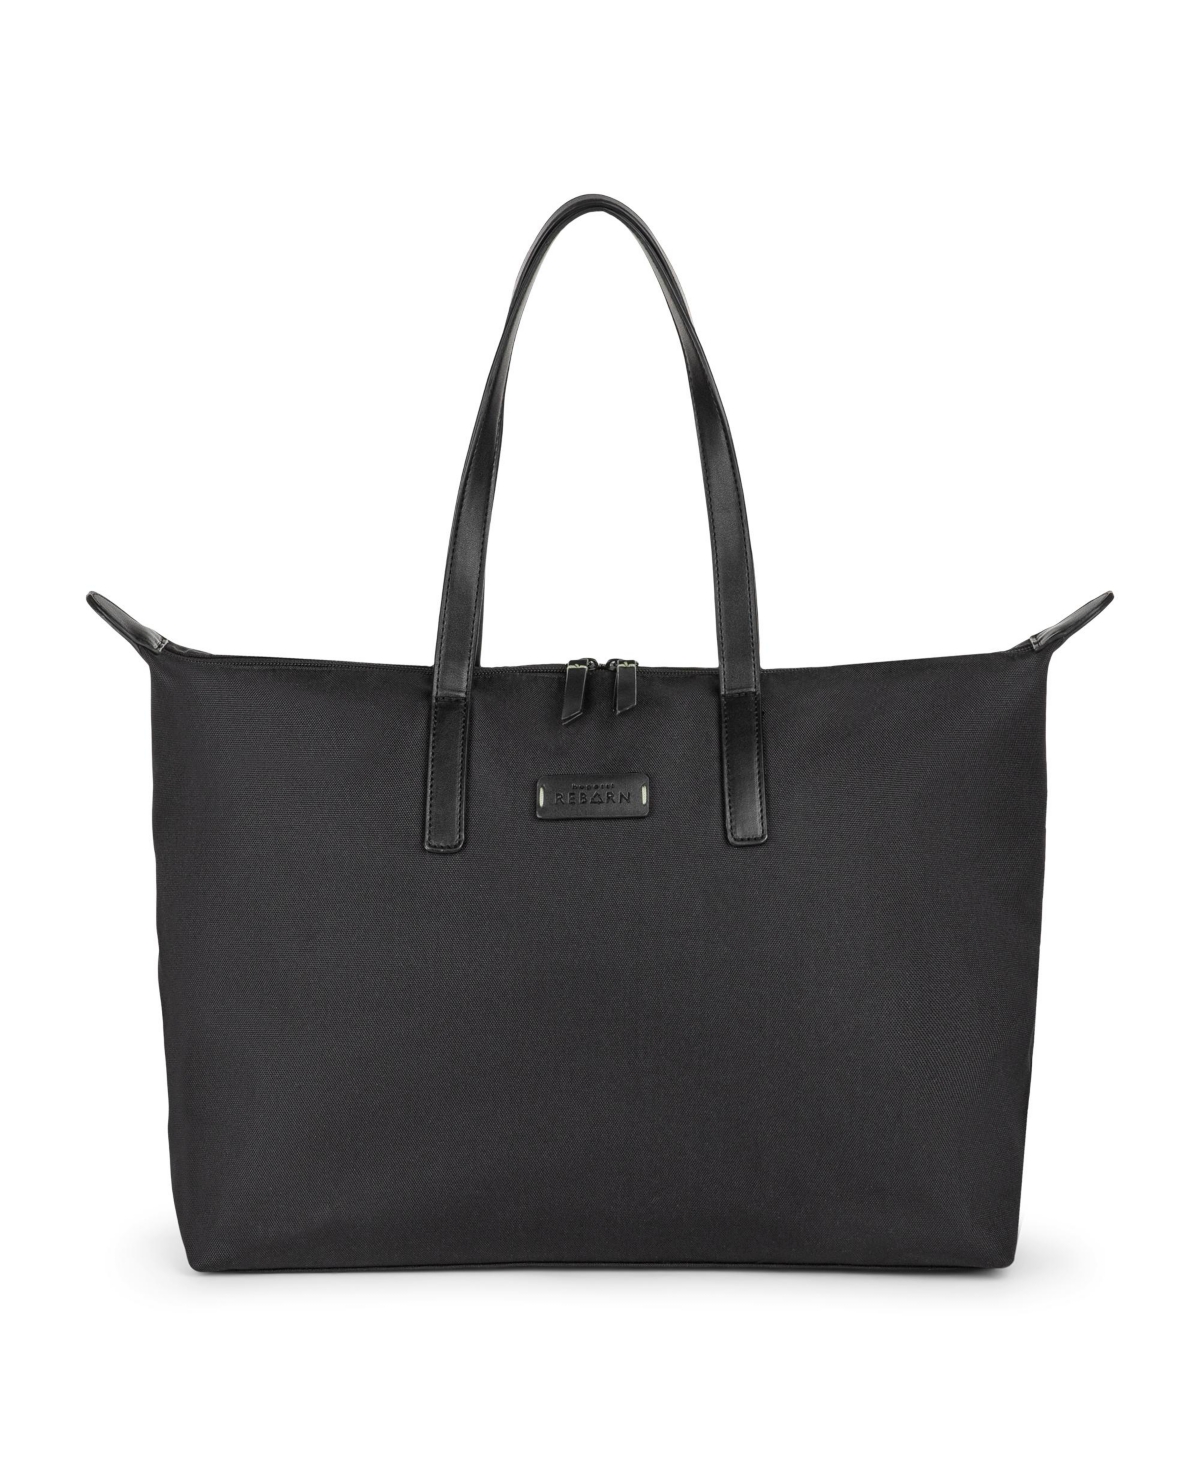 Women's Reborn Business Tote Bag - Black